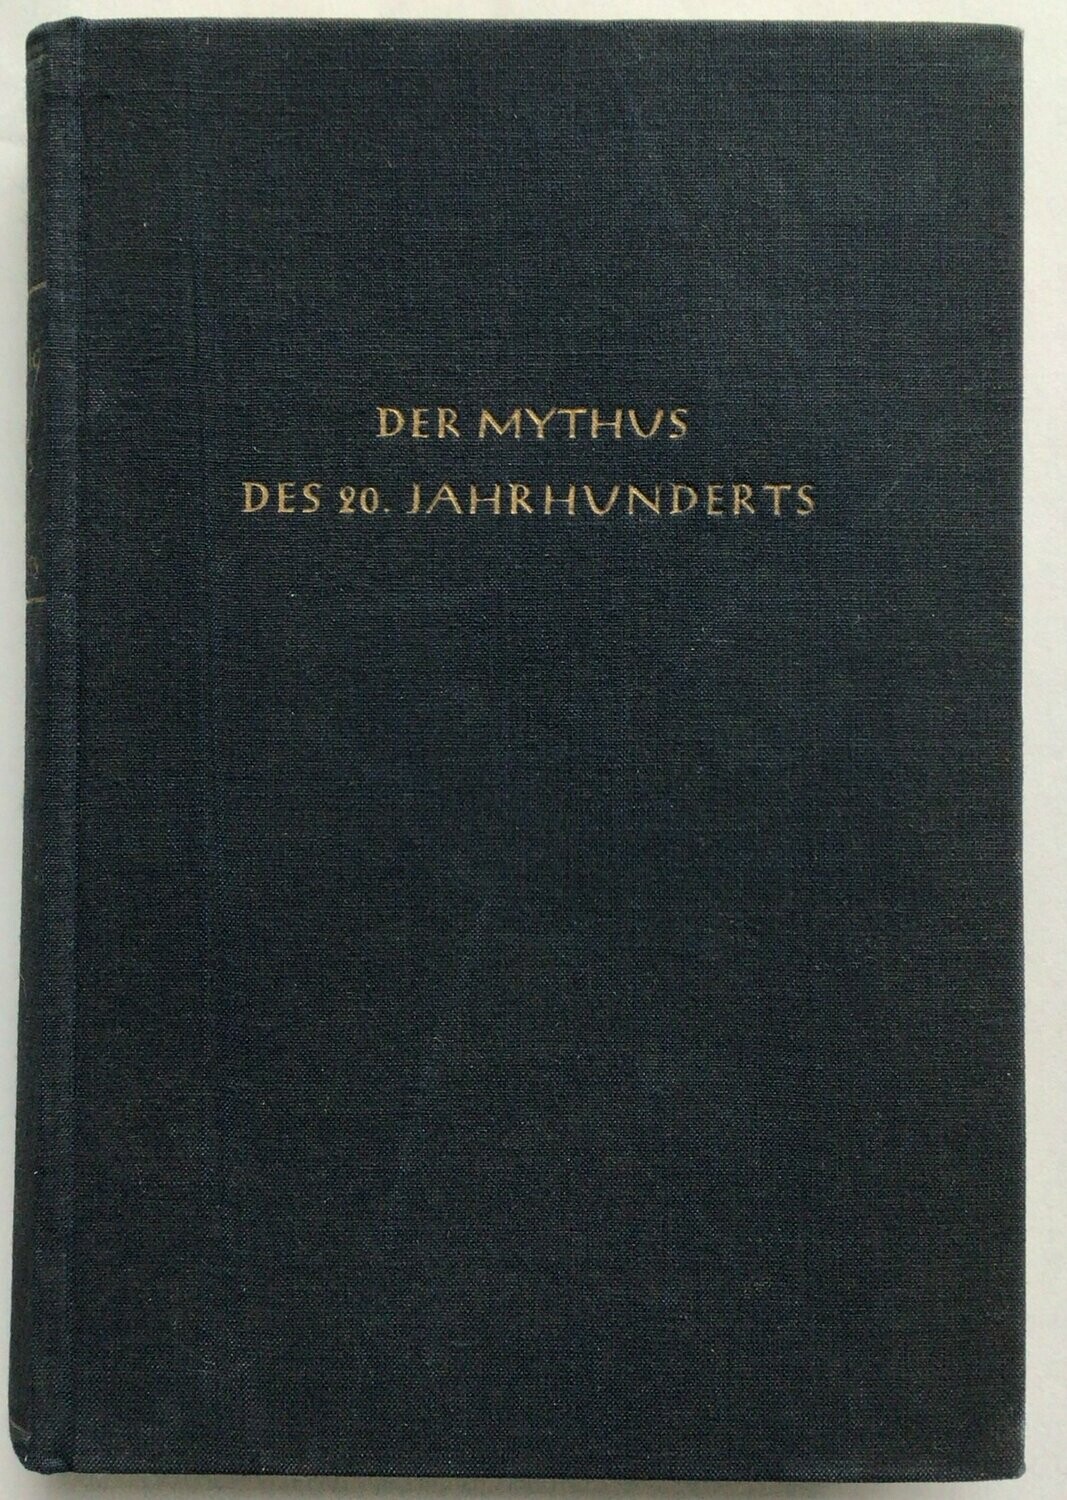 Der Mythus des 20. Jahrhunderts - Tornisterausgabe in blauem Ganzleinen - 9. Auflage aus dem Jahr 1943